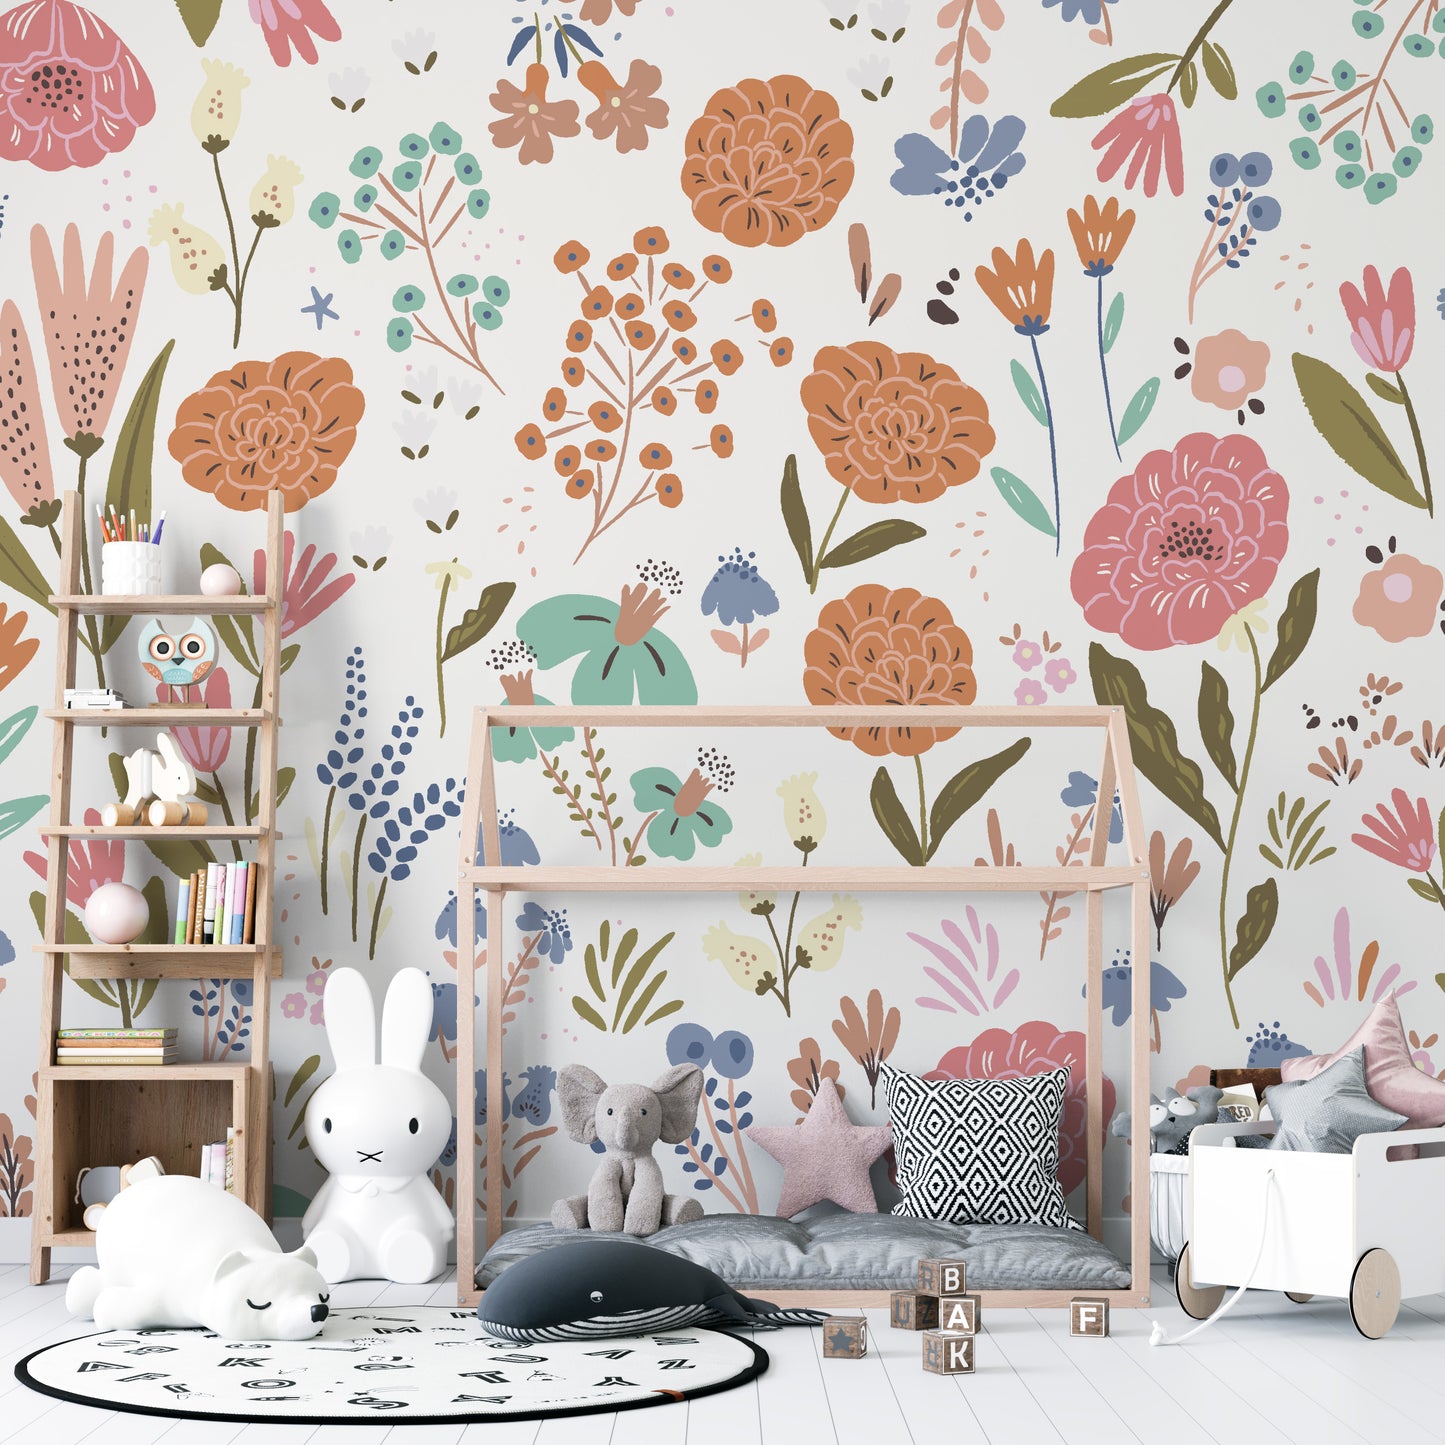 Lila Floral Wallpaper Mural - Munks and Me Wallpaper